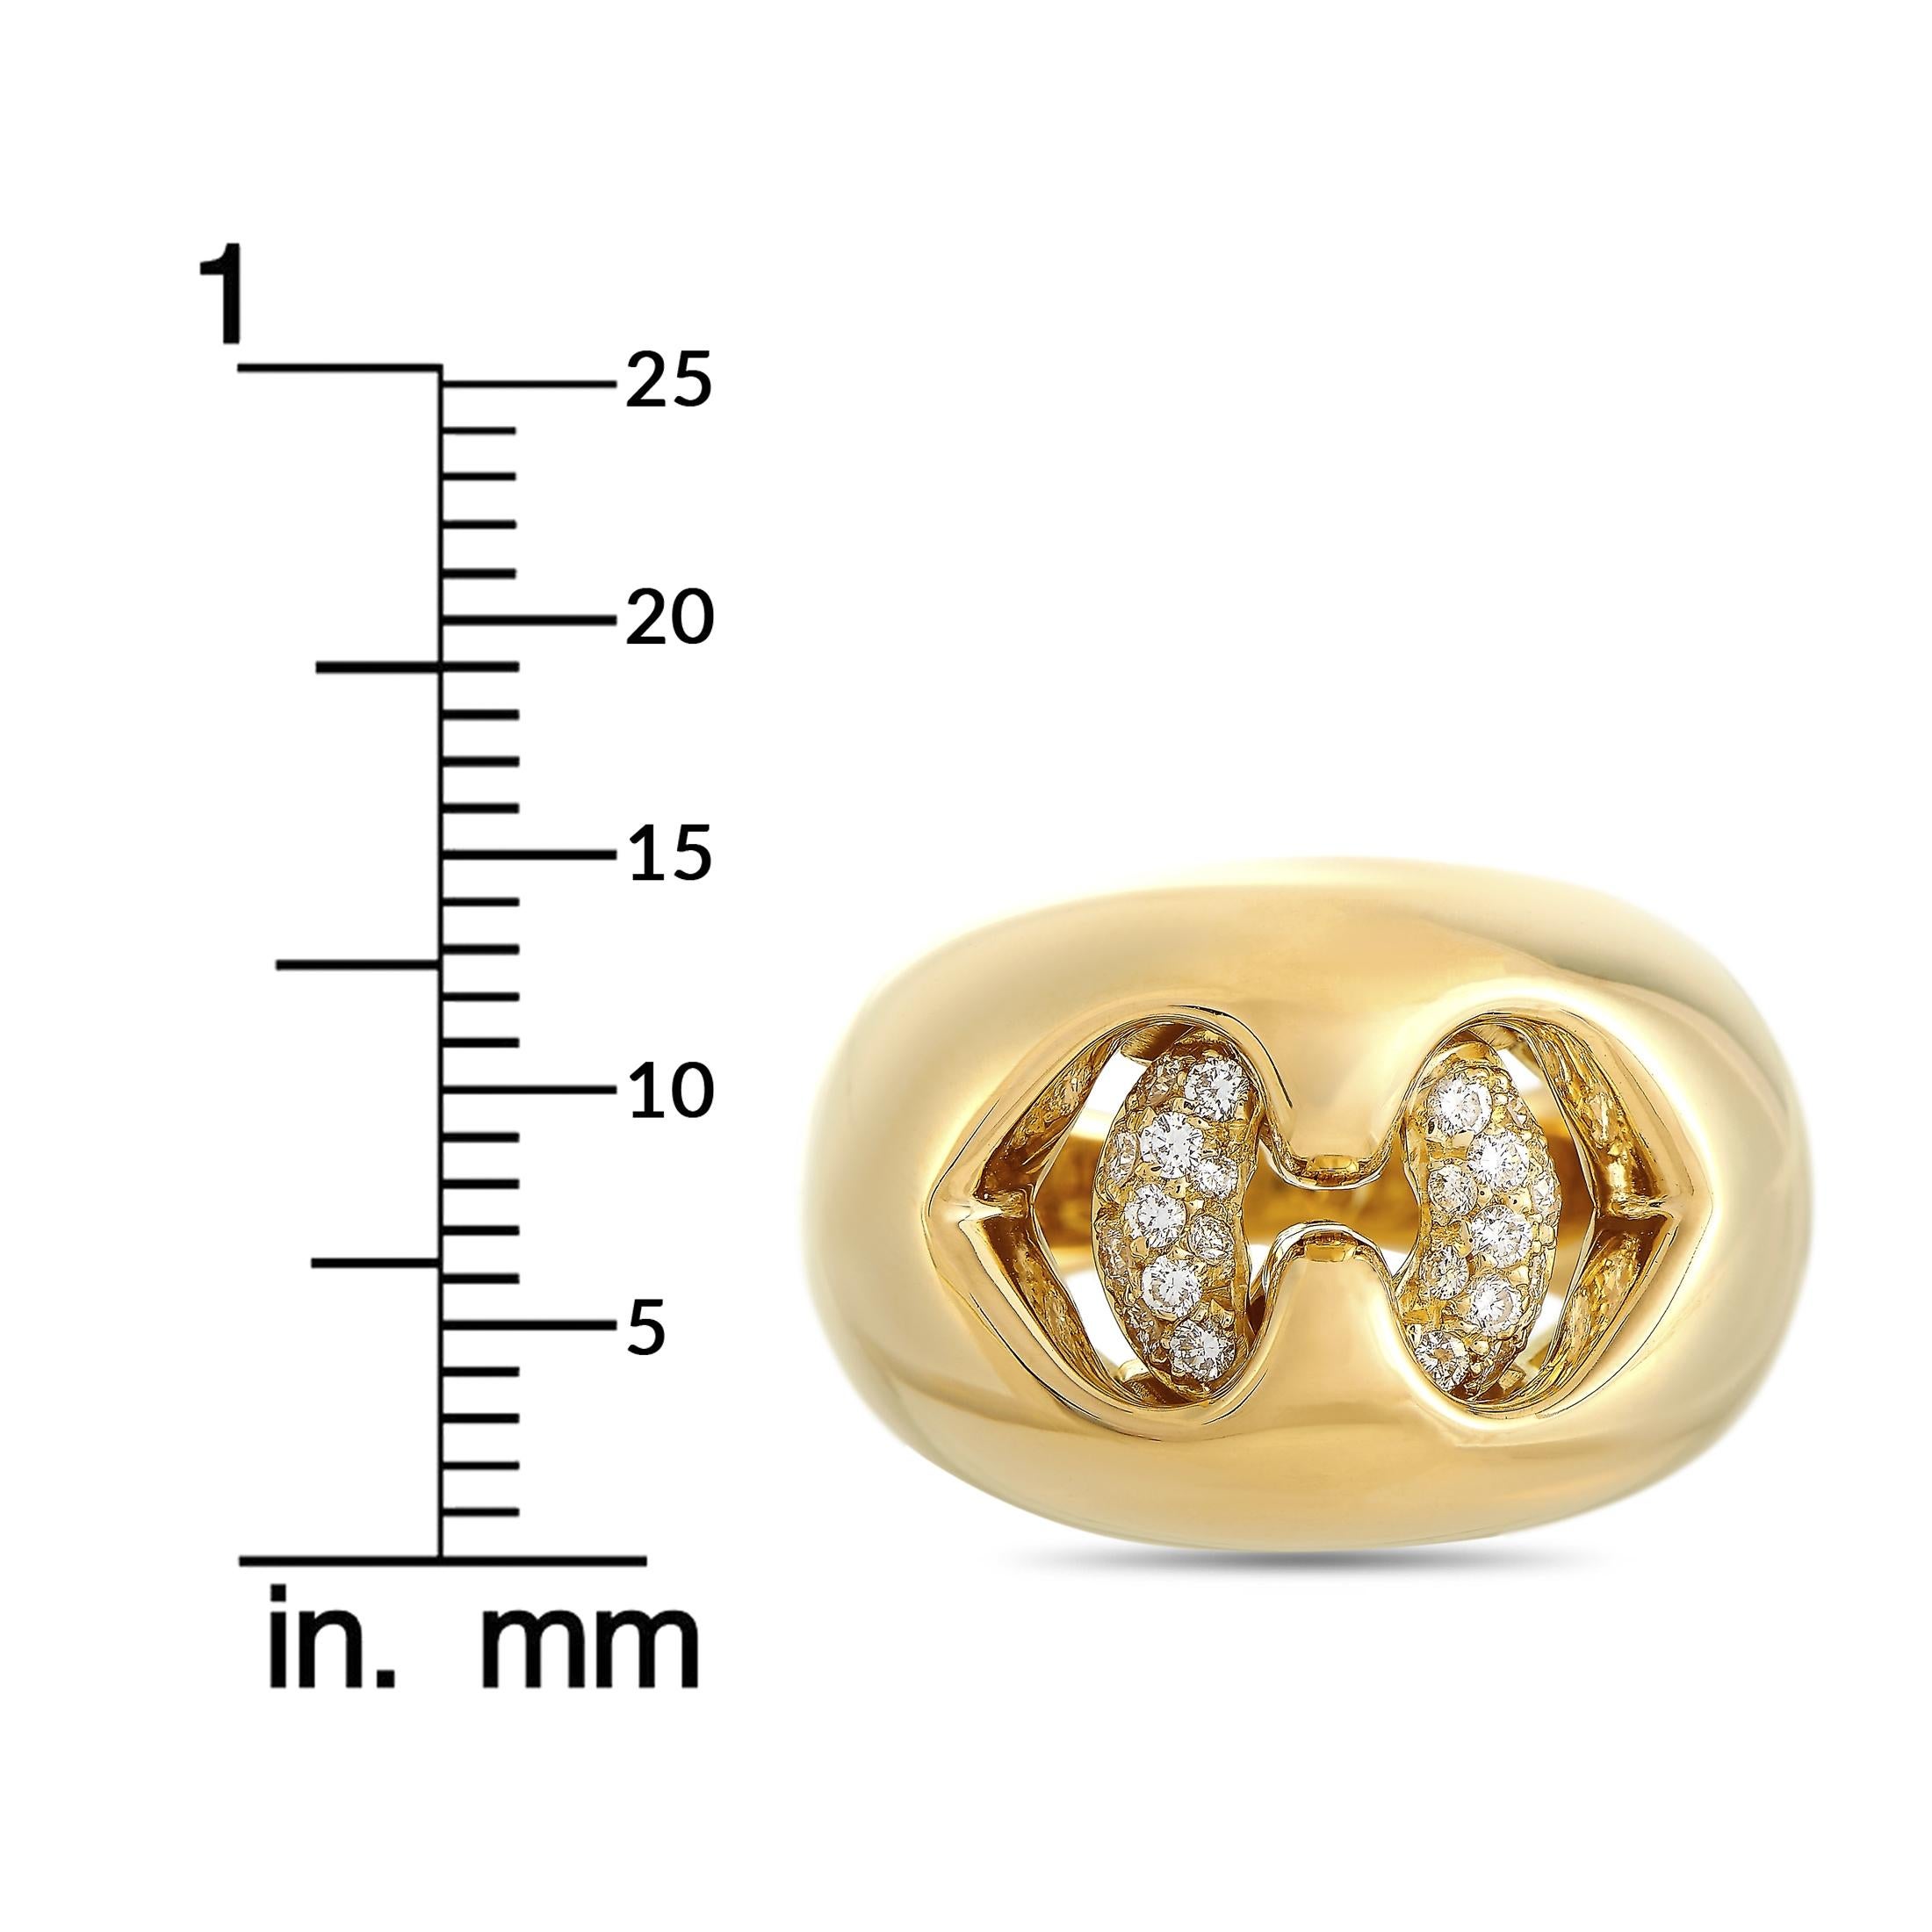 Bvlgari 18 Karat Yellow Gold 0.30 Carat Diamond Ring 1